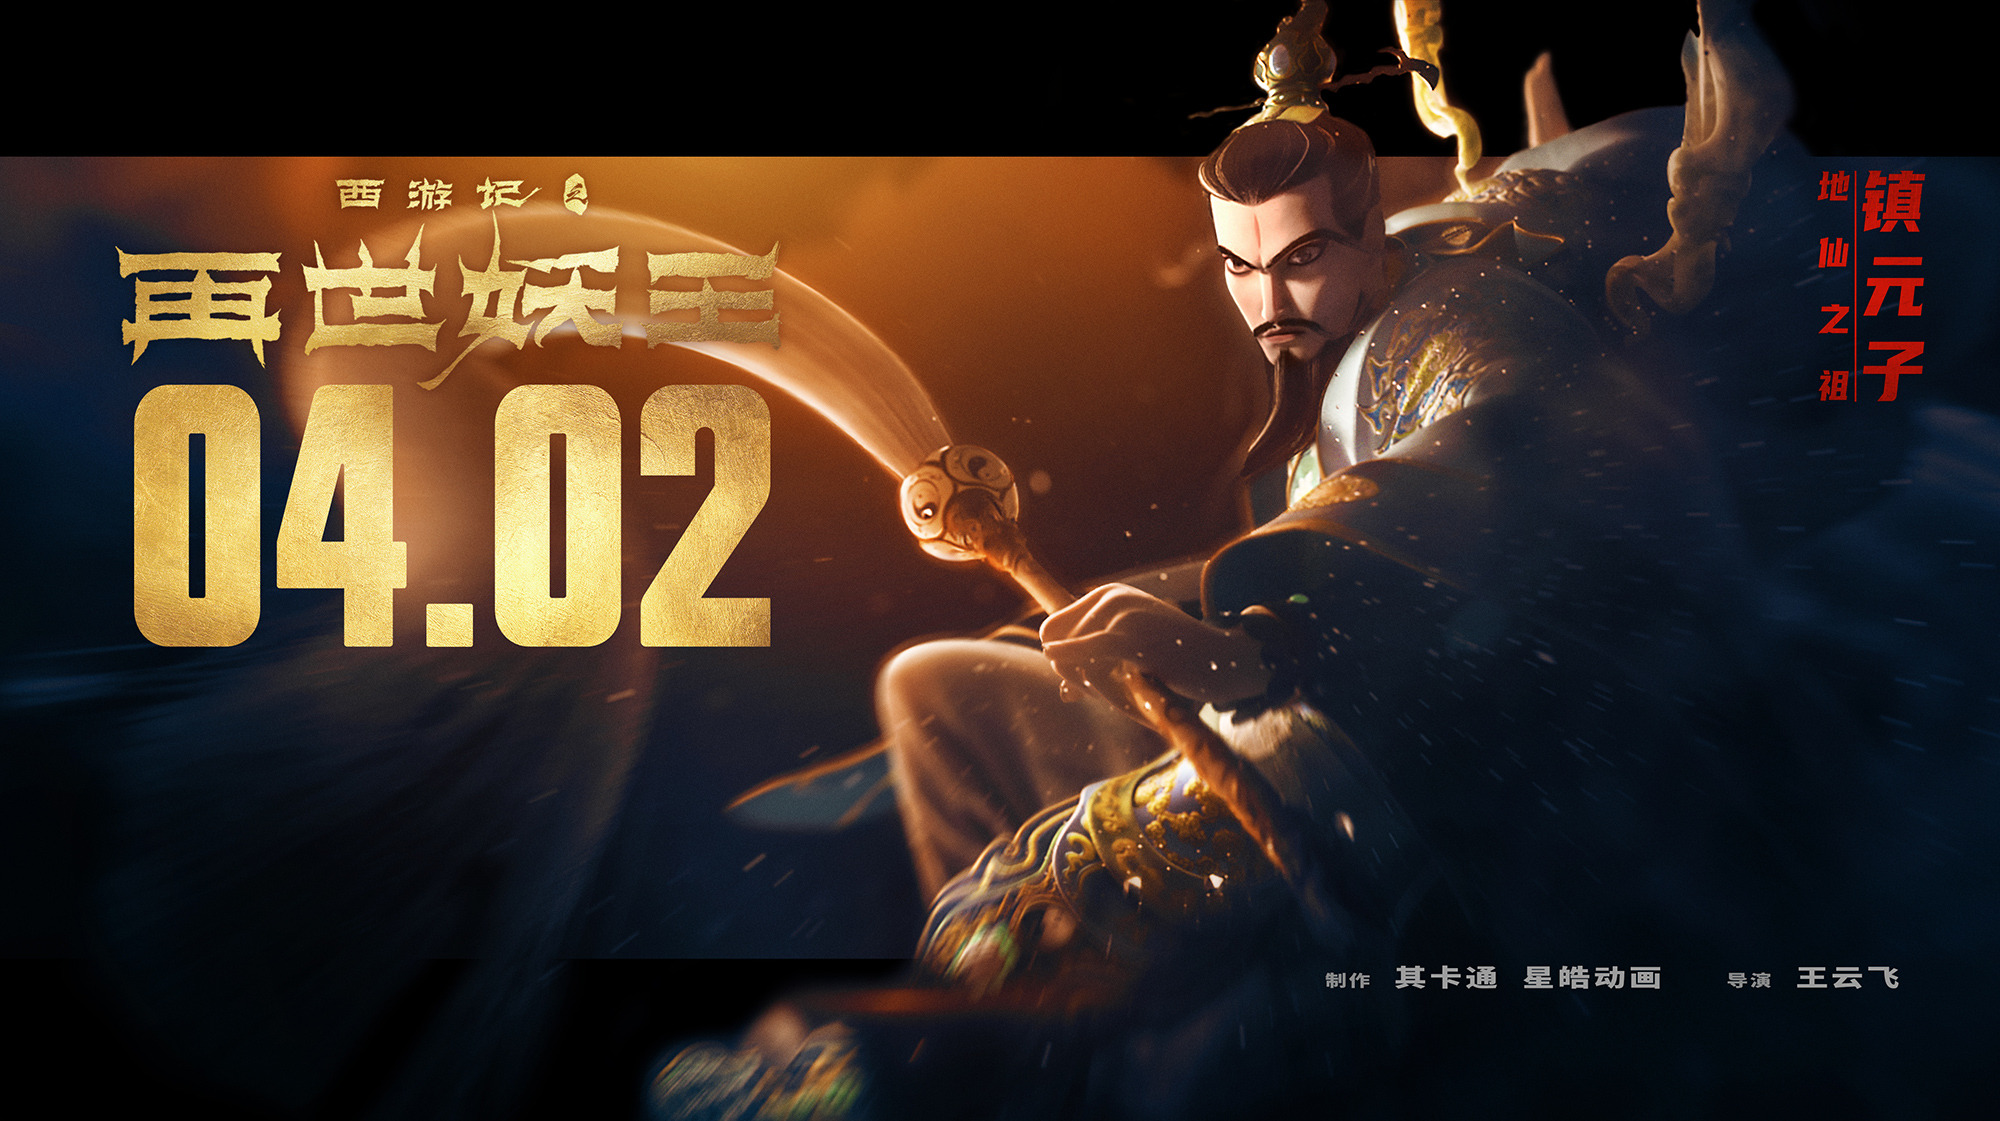 Mega Sized Movie Poster Image for Xi You Ji Zhi Zai Shi Yao Wang (#17 of 21)